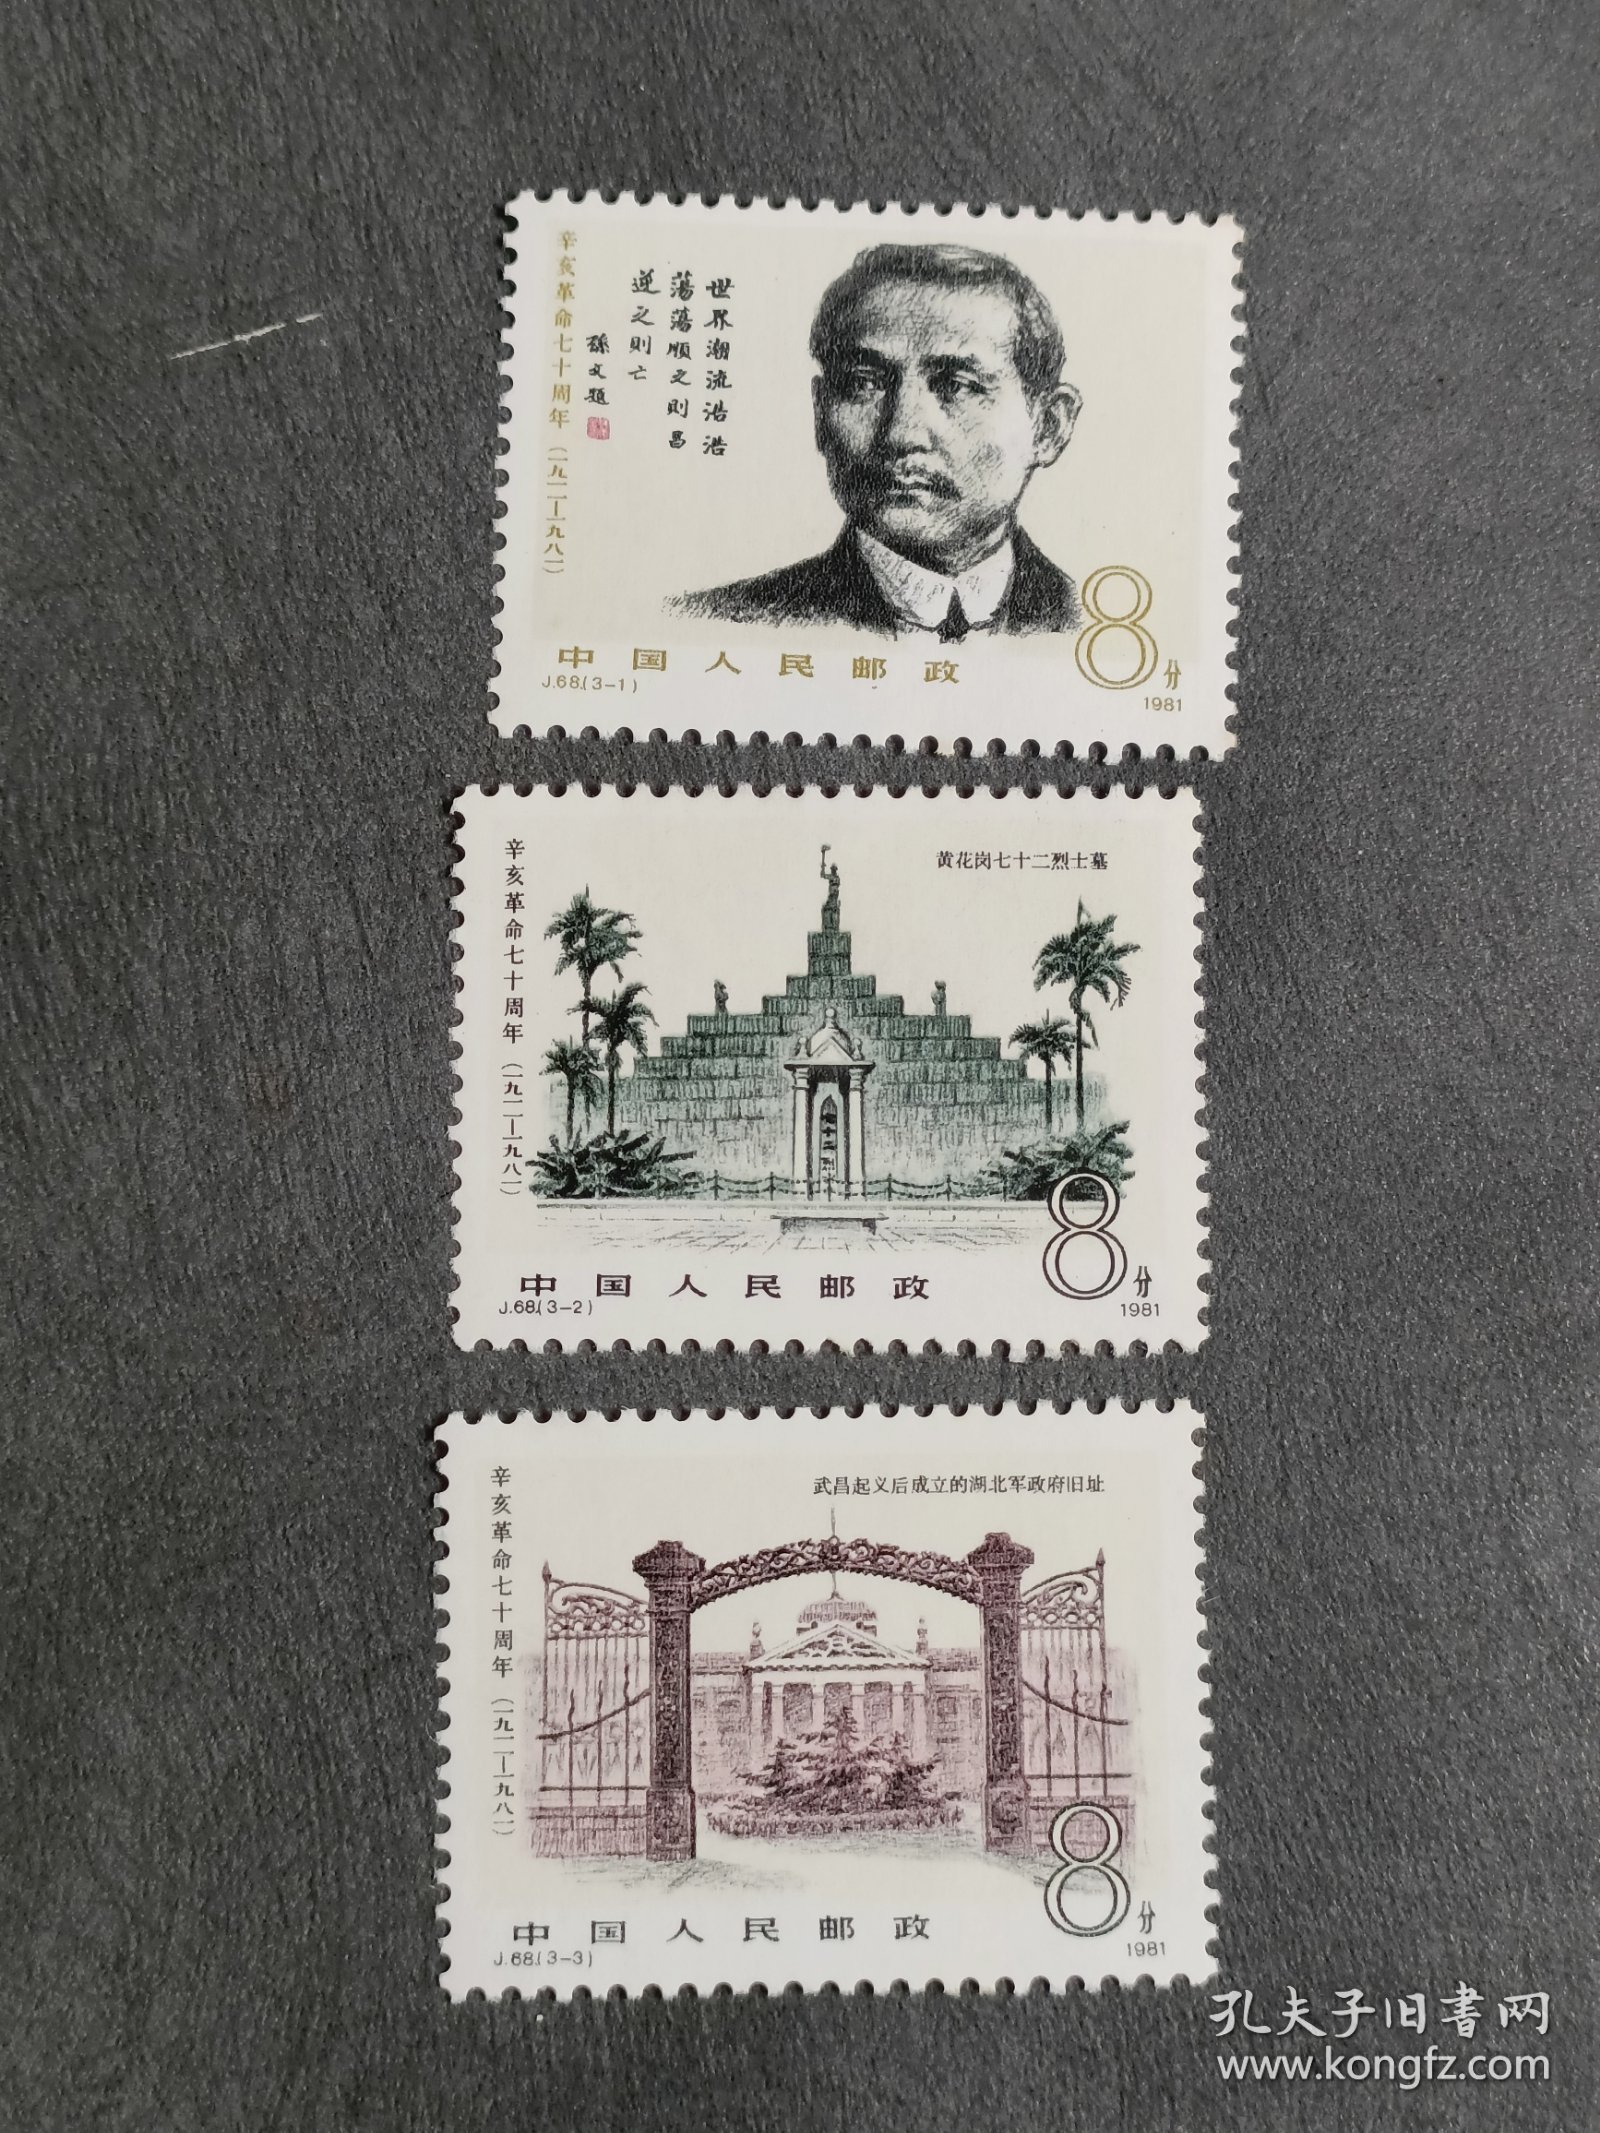 1981年 编号J68 辛亥革命七十周年 邮票 (3枚全)